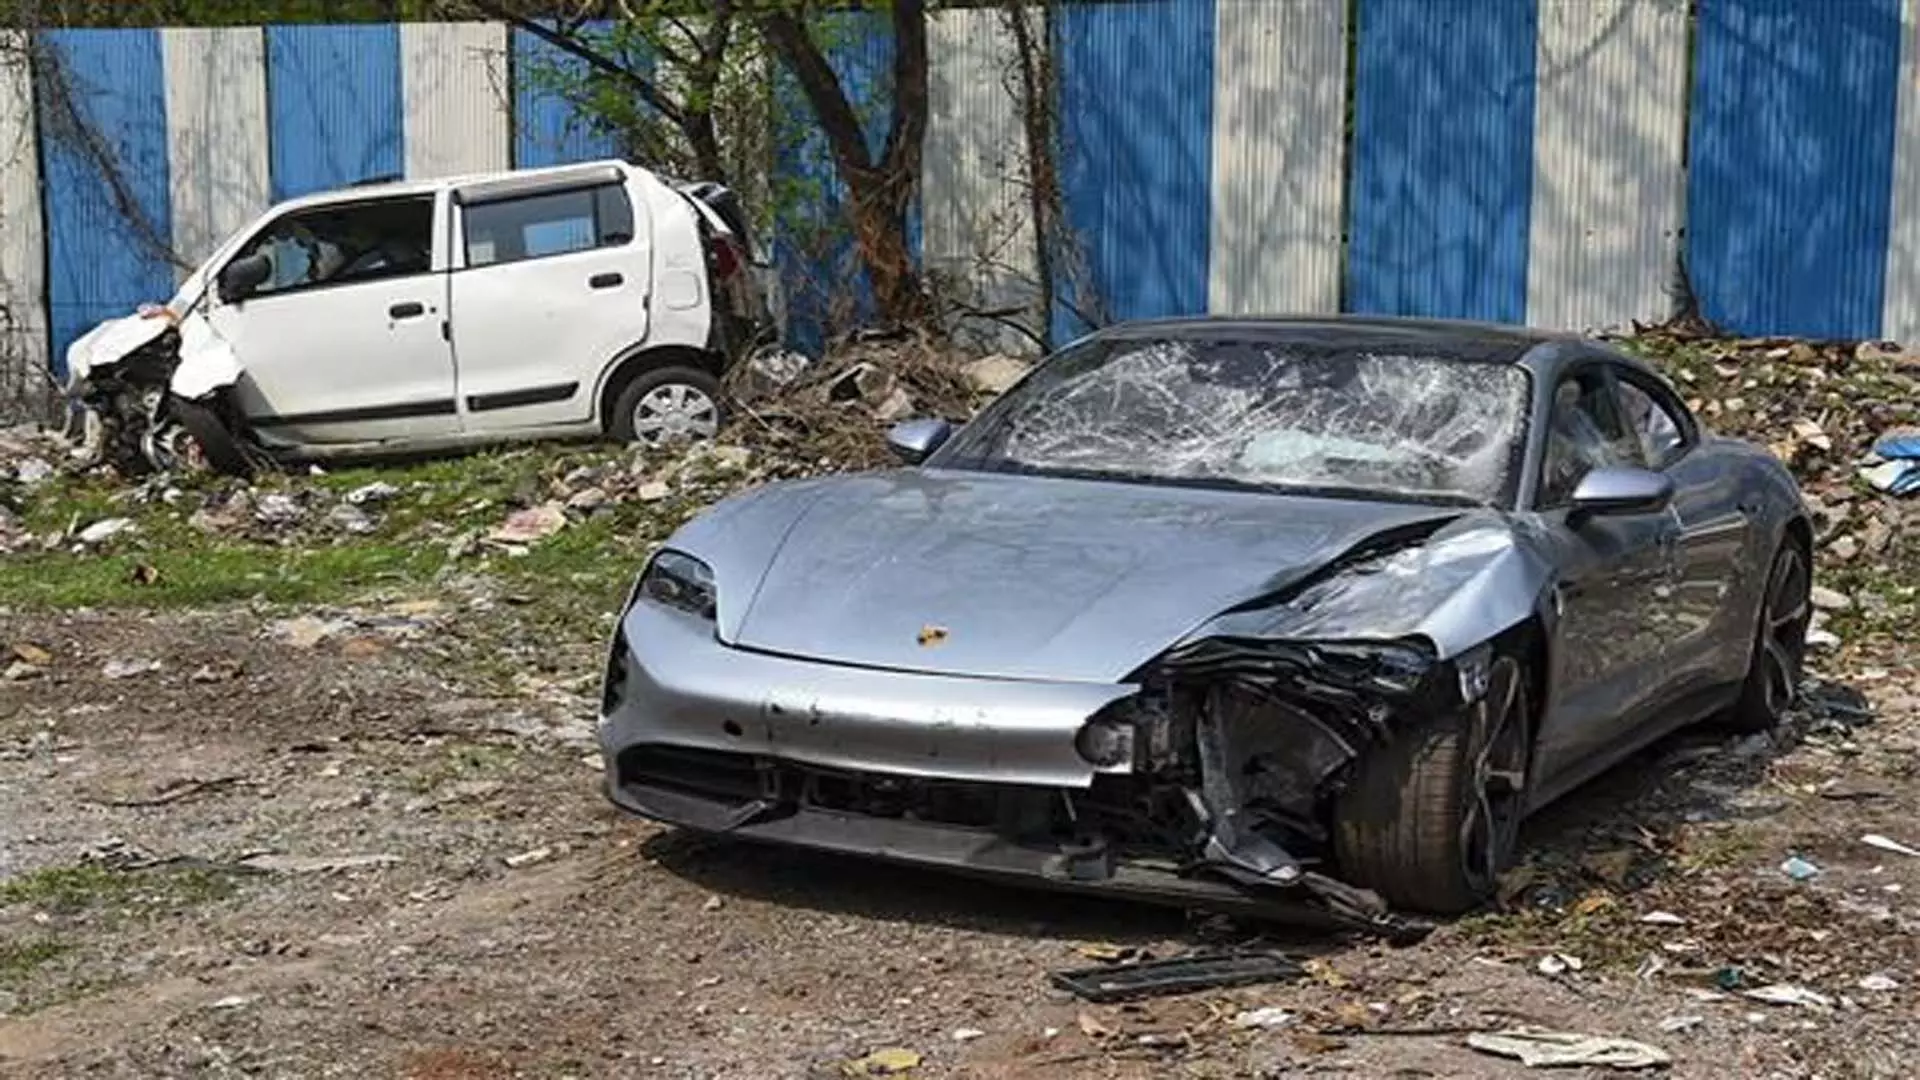 MUMBAI: पोर्श दुर्घटना मामले में पुलिस ने अदालत को बताई बड़ी बात